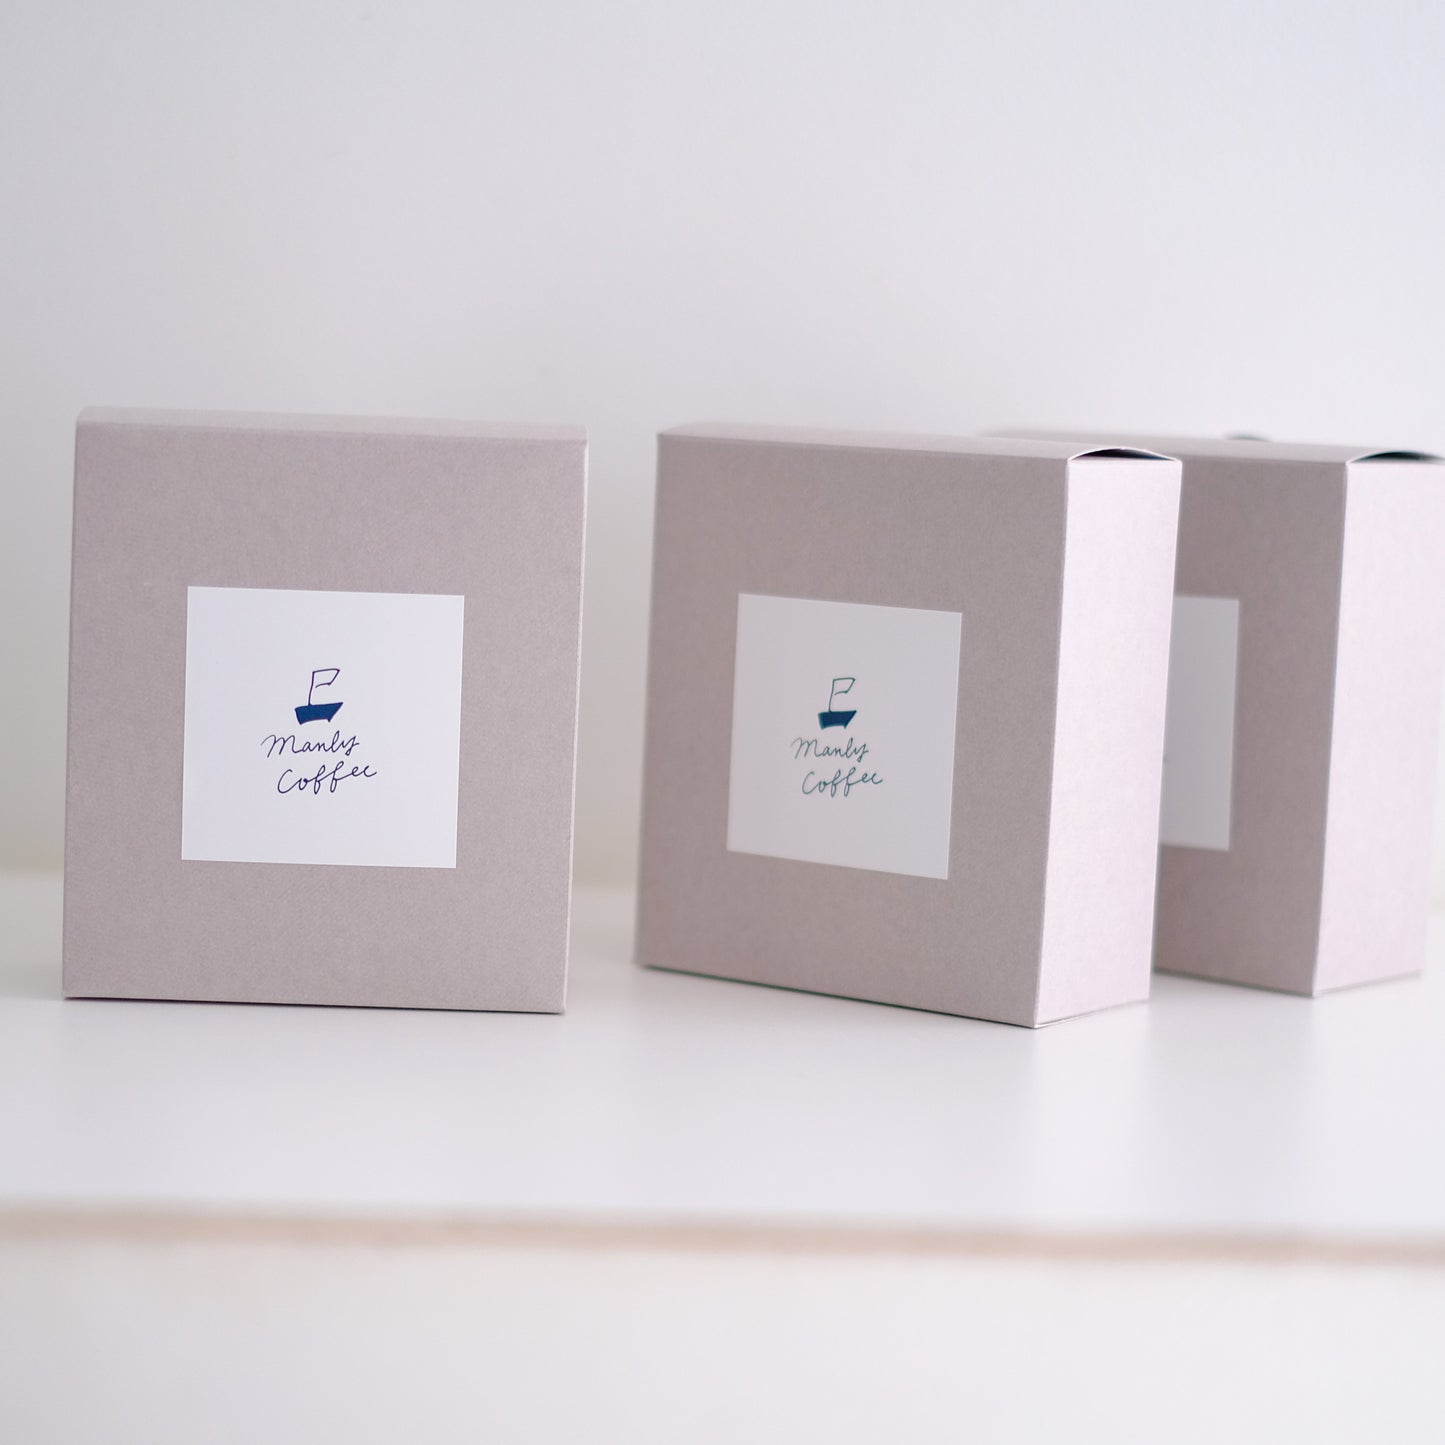 【箱入】コーヒーバッグ 3種 アソートセット- ディップスタイル- Coffee Bags - Dip Style - 3 types 6 packs set